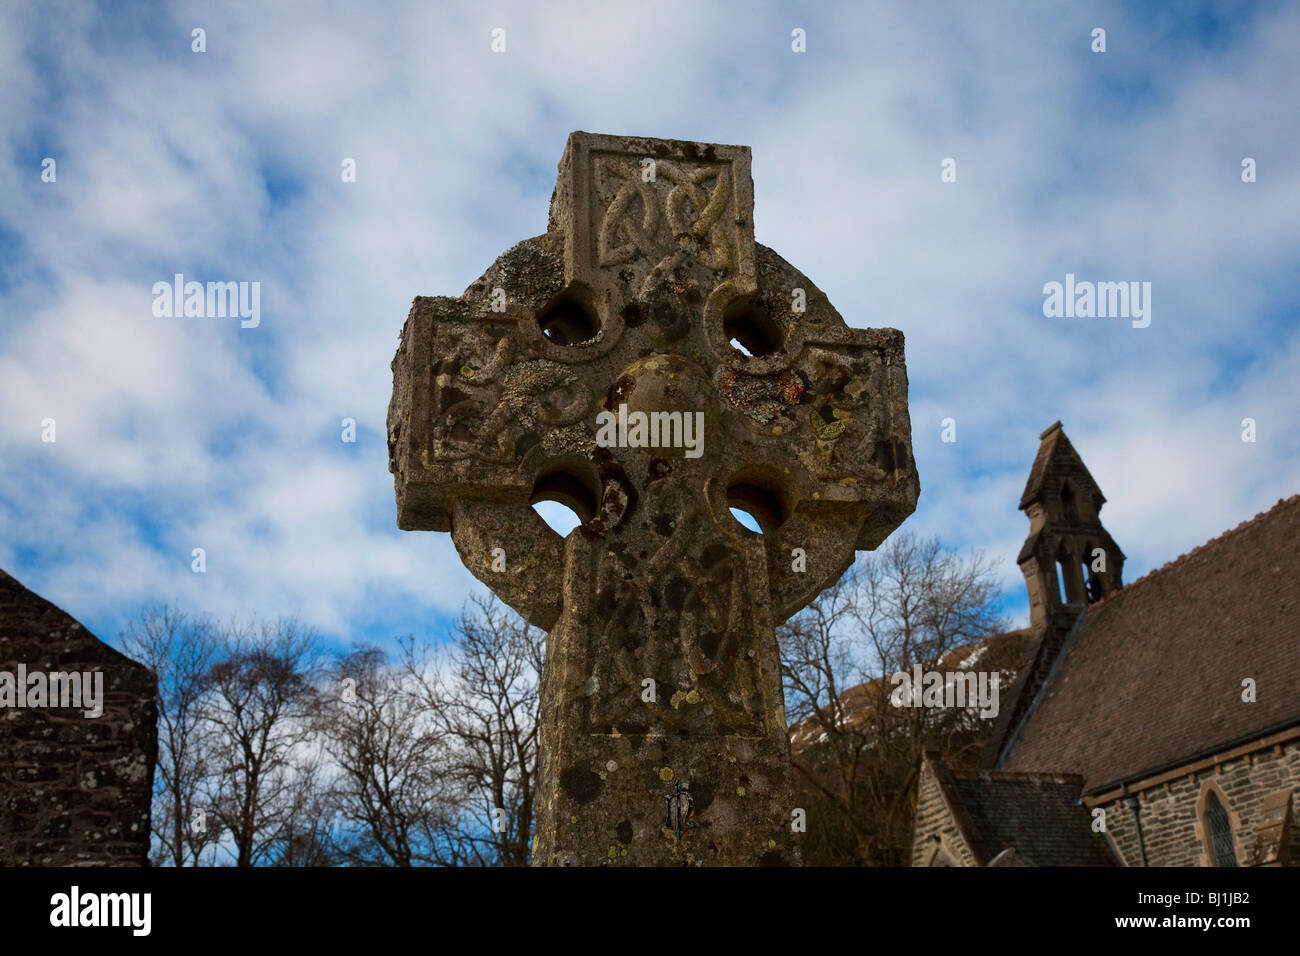 La sculpture sur pierre Monument grave portant la croix celtique sculptés entrelacés, Ecosse, Royaume-Uni Banque D'Images